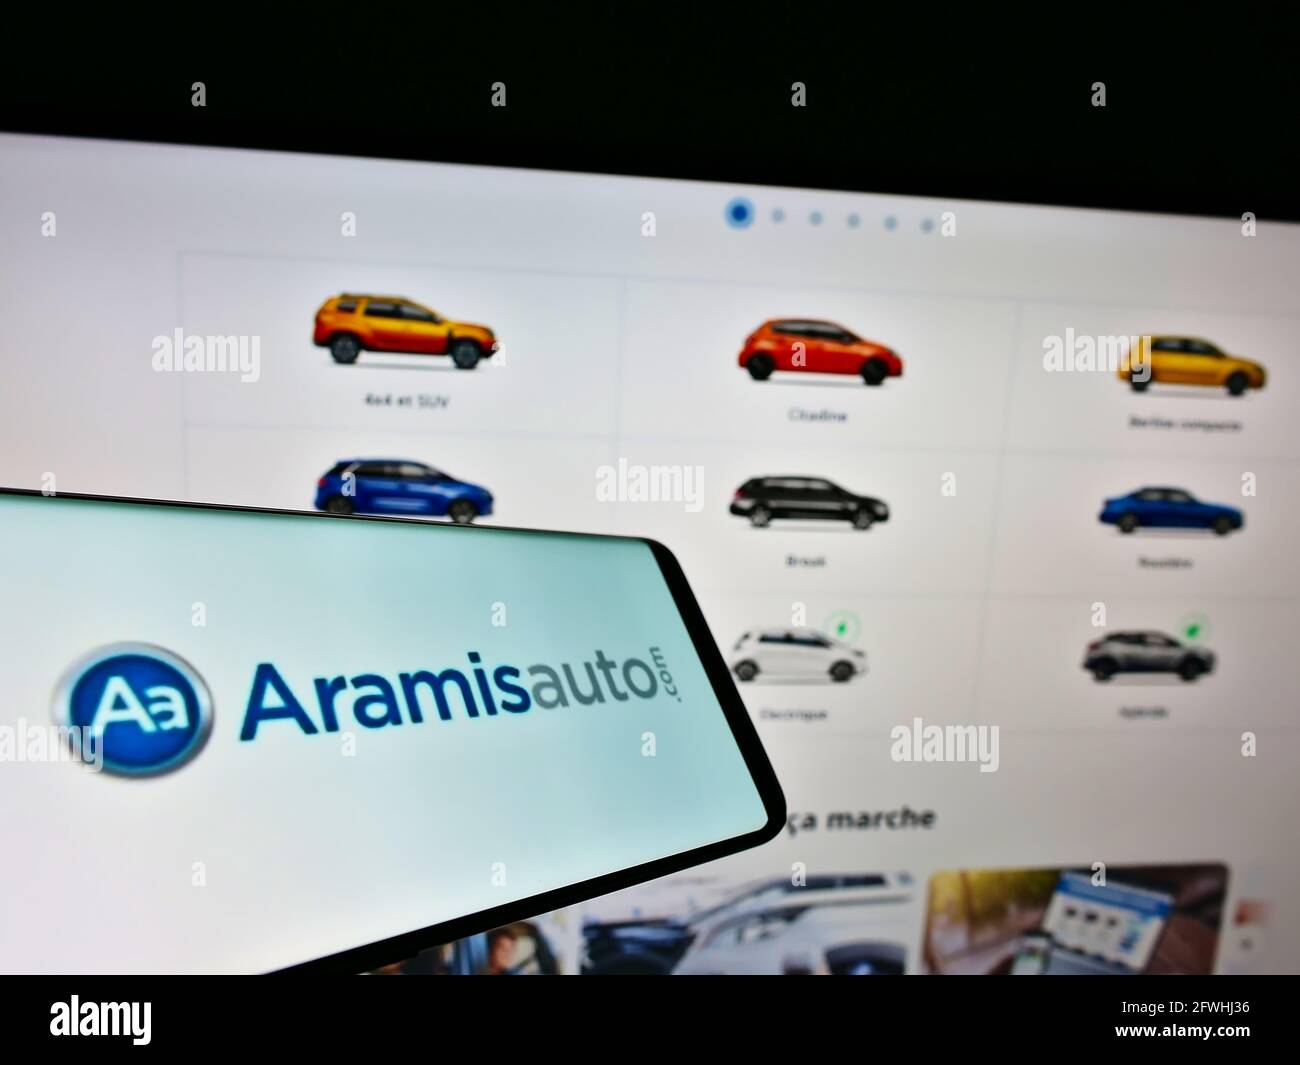 Telefono cellulare con logo del rivenditore francese di auto online Aramis SAS (Aramisauto) sullo schermo di fronte al sito web. Mettere a fuoco sul display centrale destro del telefono. Foto Stock